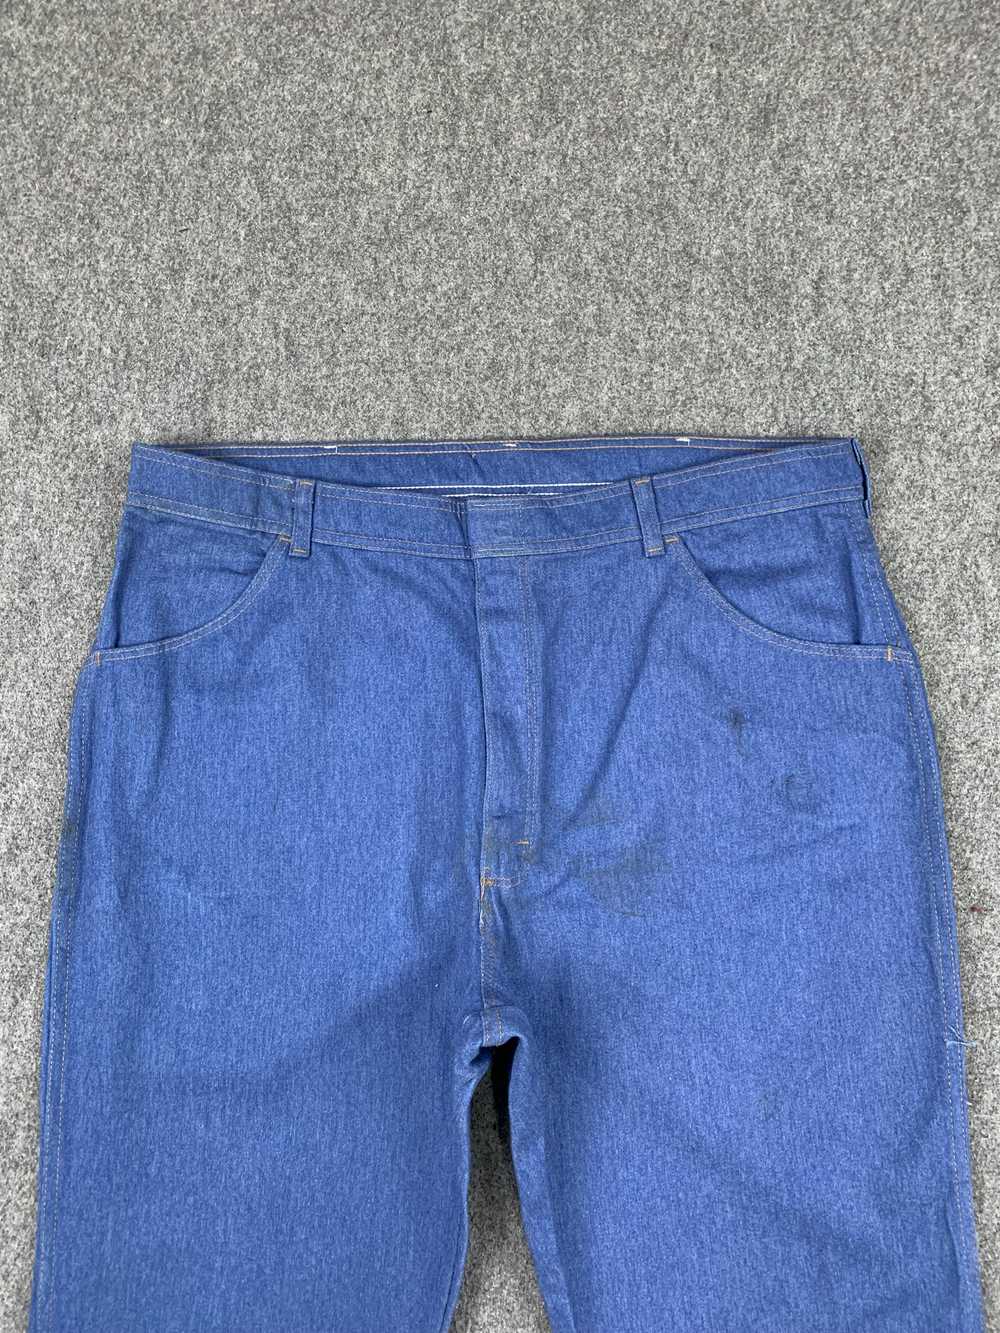 Vintage - Vintage Wrangler Blue Denim Jeans - image 2